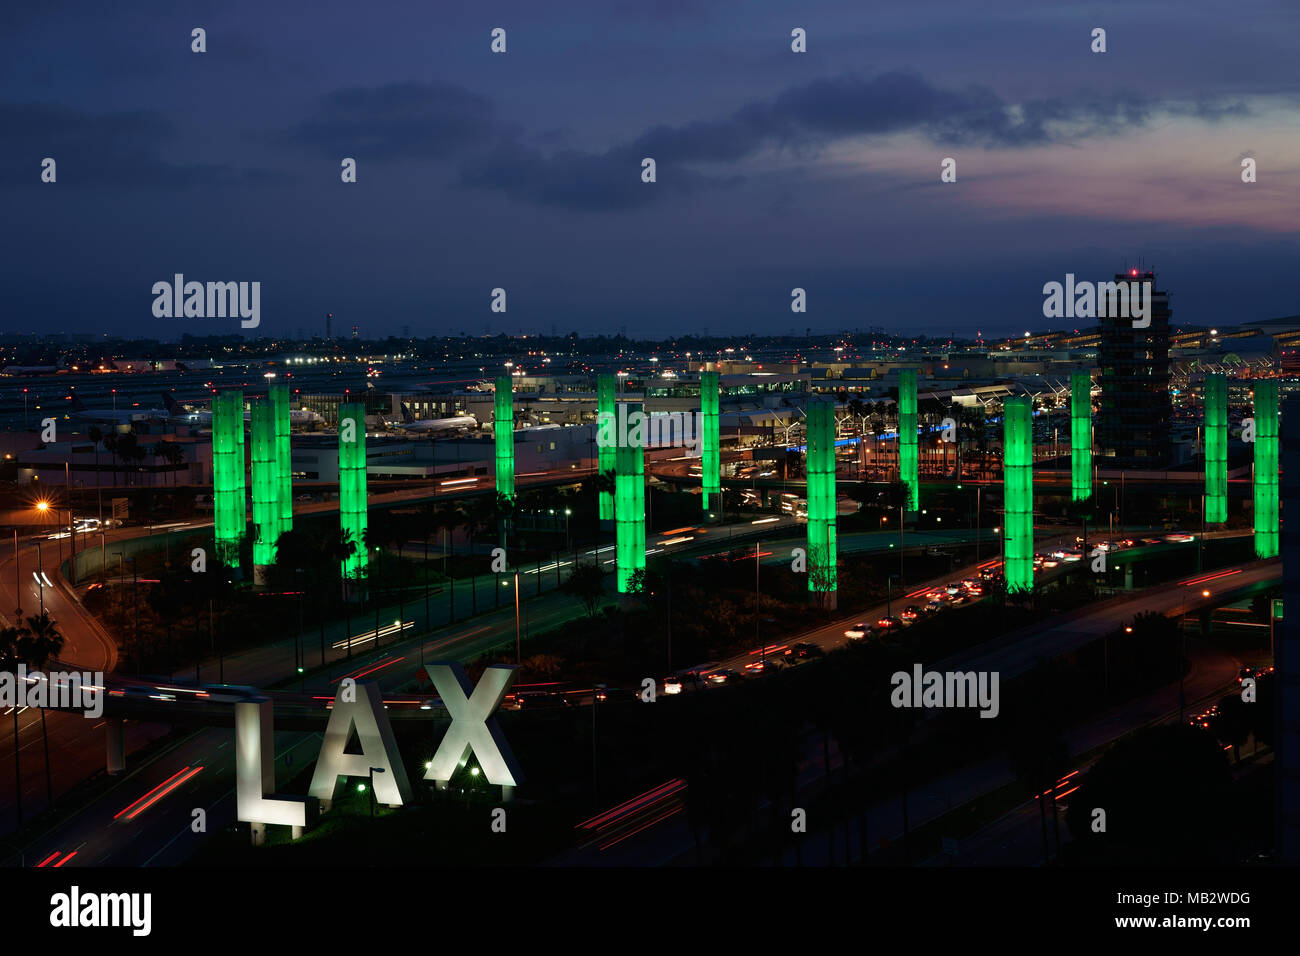 Instalación de luz cinética al atardecer. Proyecto LAX Gateway Pylon, Aeropuerto Internacional de Los Ángeles, California, Estados Unidos. Foto de stock